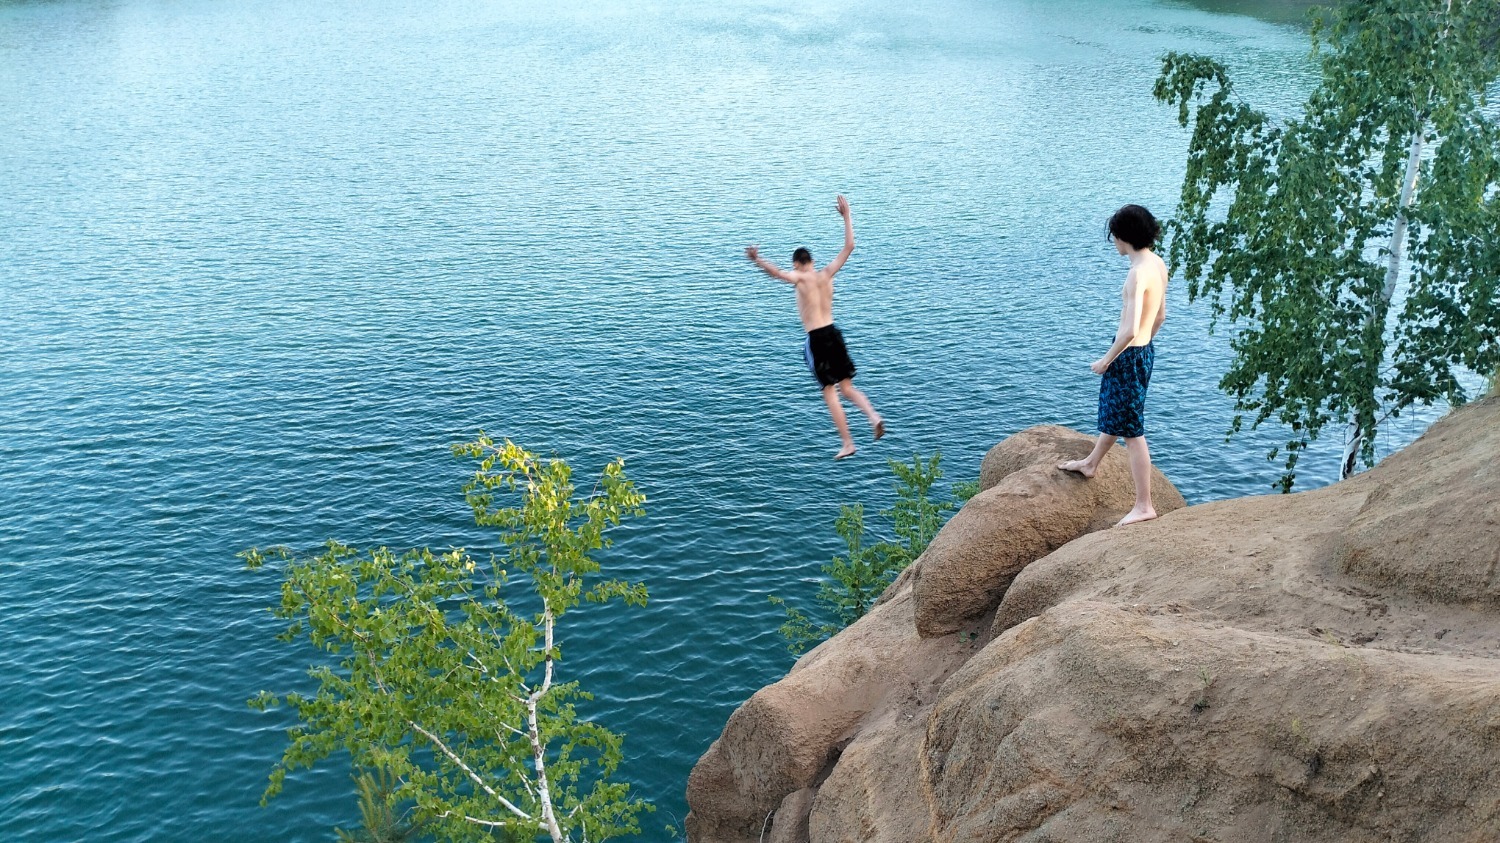 Прыжки в воду Голубого карьера с большой высоты - обычная картина для Челябинска летом